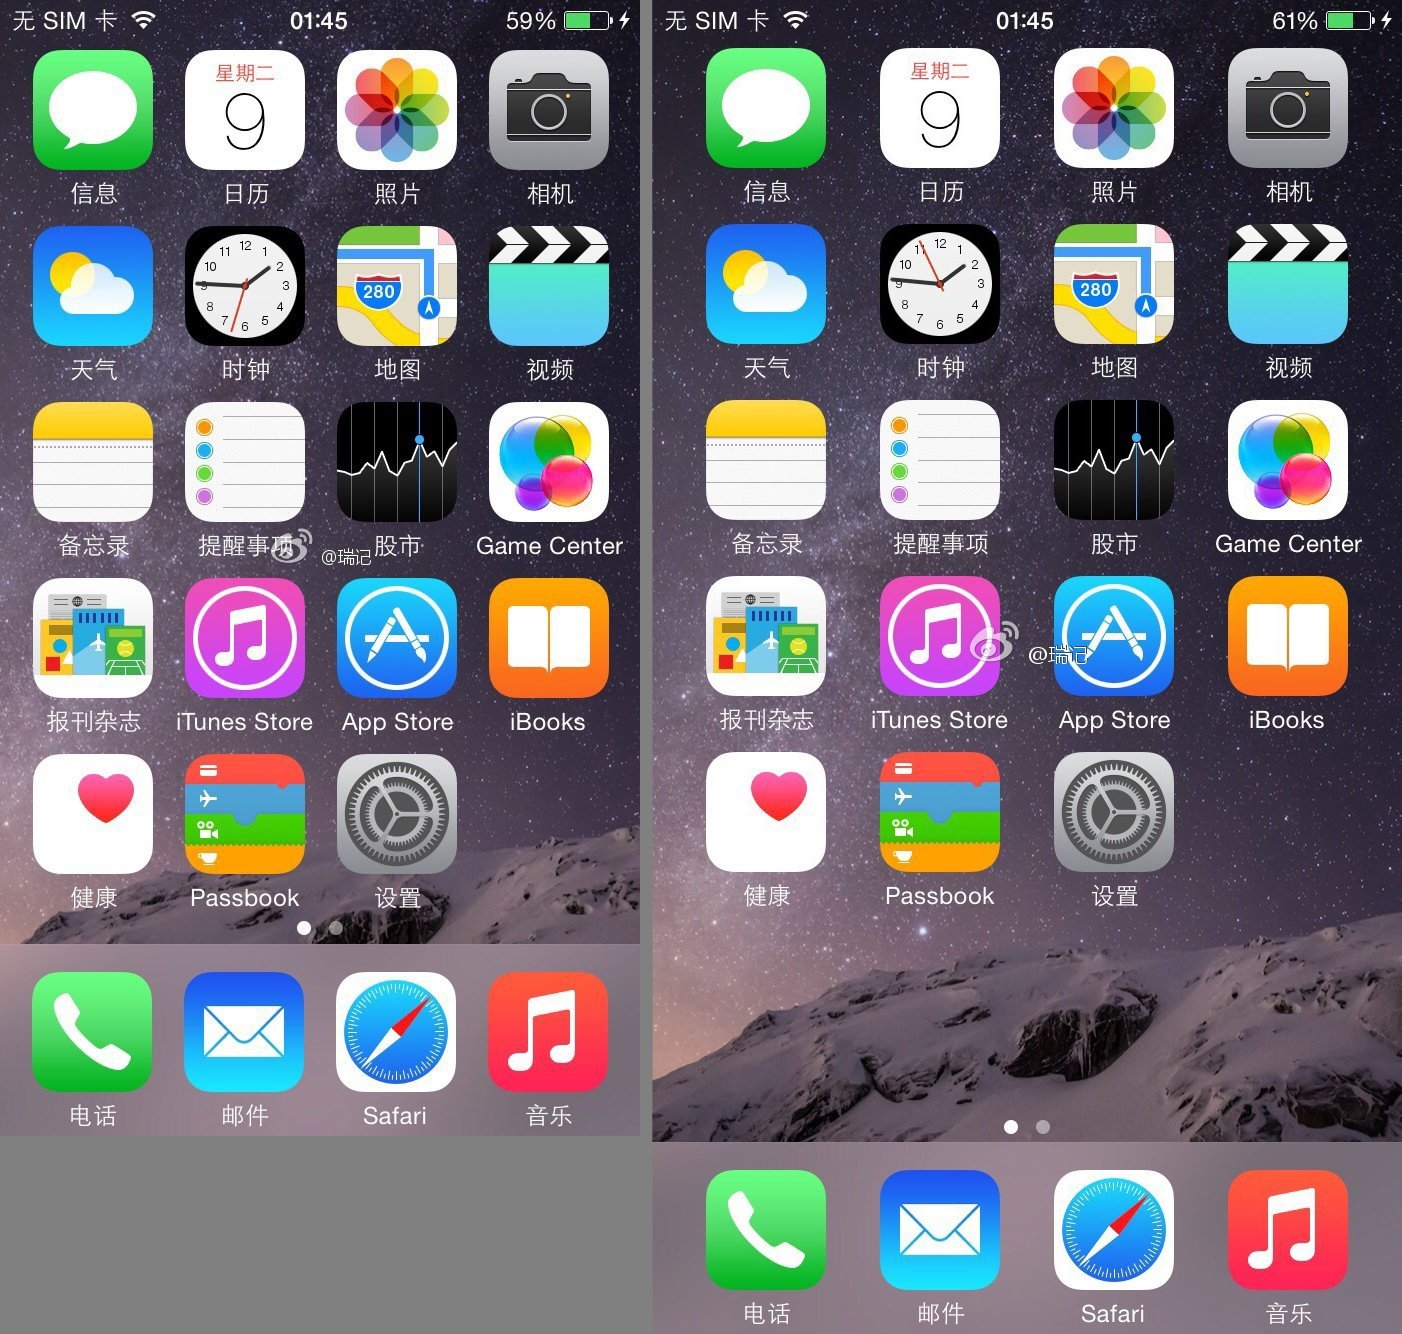 微博用戶瑞記分享的 4.7 吋(圖左) 和 5.5 吋 iPhone 6 （圖右）的 Springboard 截圖。可見 5.5 吋 iPhone 6 的圖示比較鬆散。